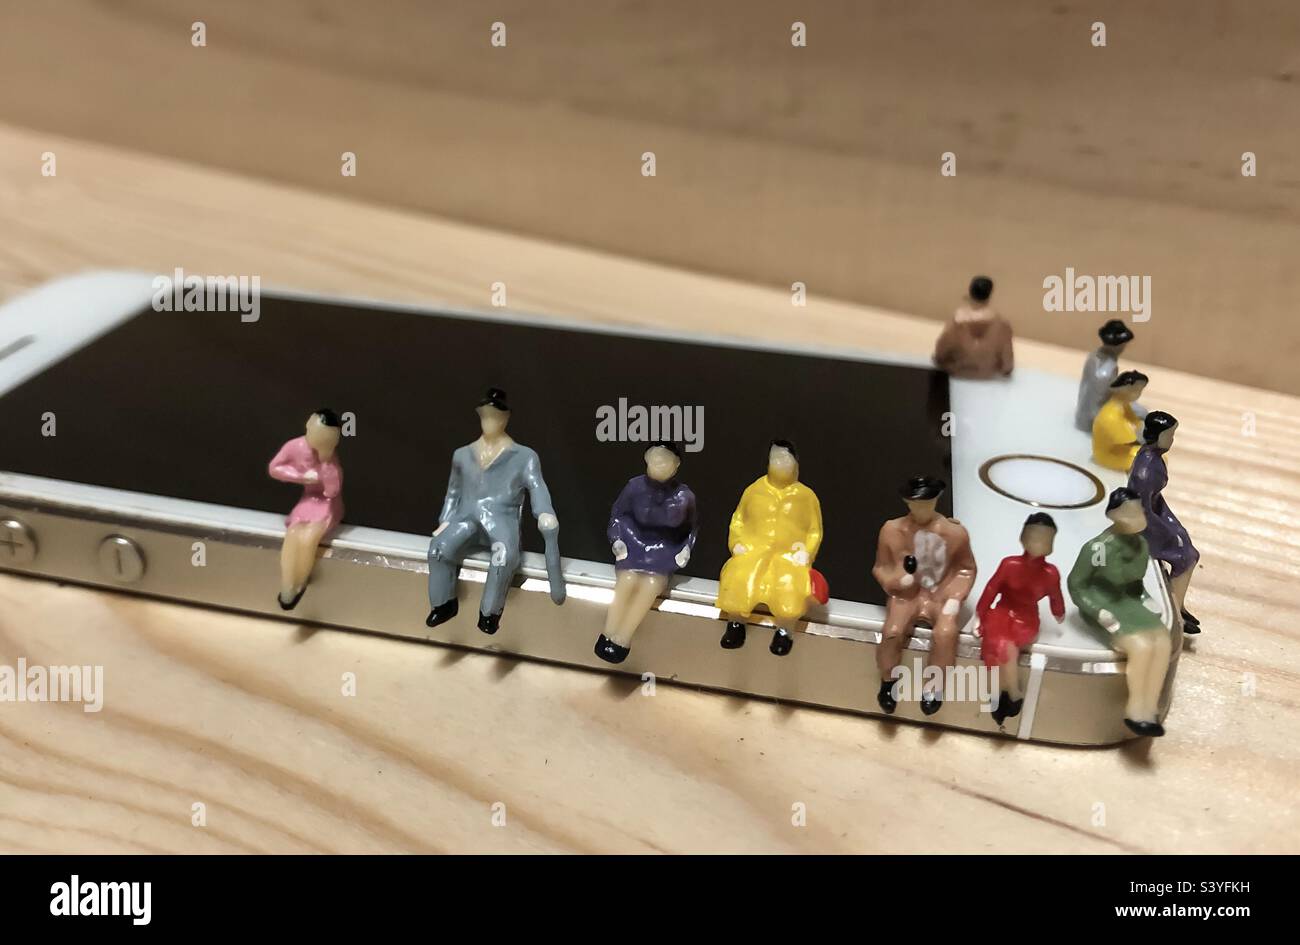 Menschen am Telefon - Miniatur-Figuren auf einem iPhone sitzen Stockfoto